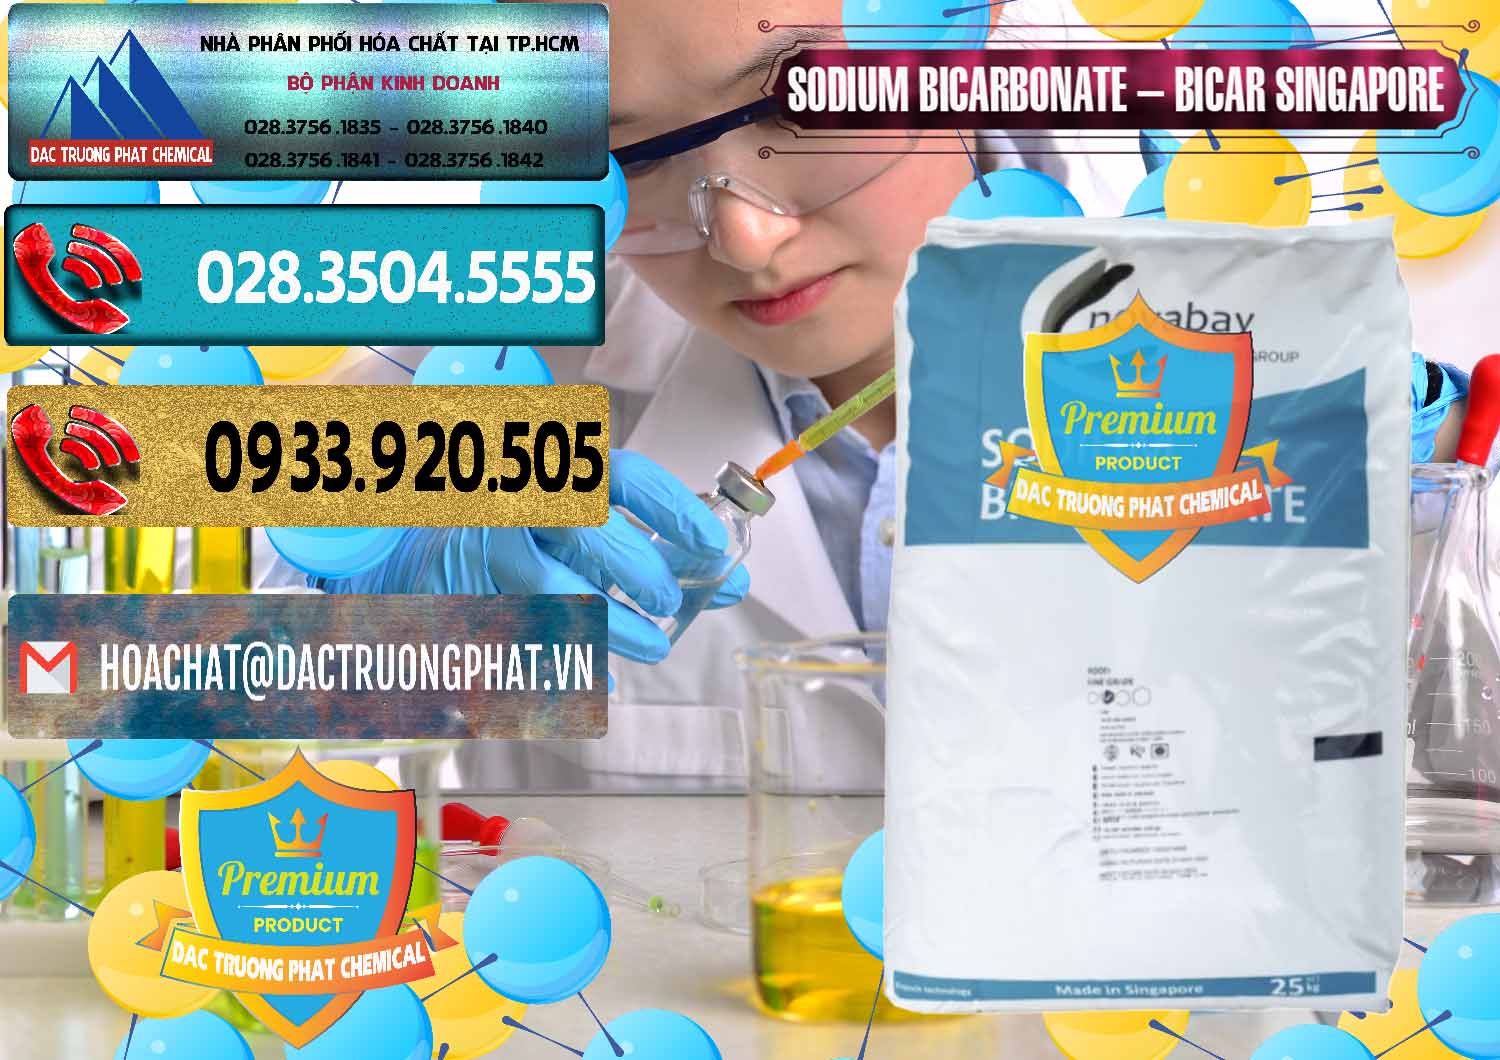 Chuyên bán ( cung ứng ) Sodium Bicarbonate – Bicar NaHCO3 Singapore - 0411 - Chuyên phân phối ( kinh doanh ) hóa chất tại TP.HCM - hoachatdetnhuom.com